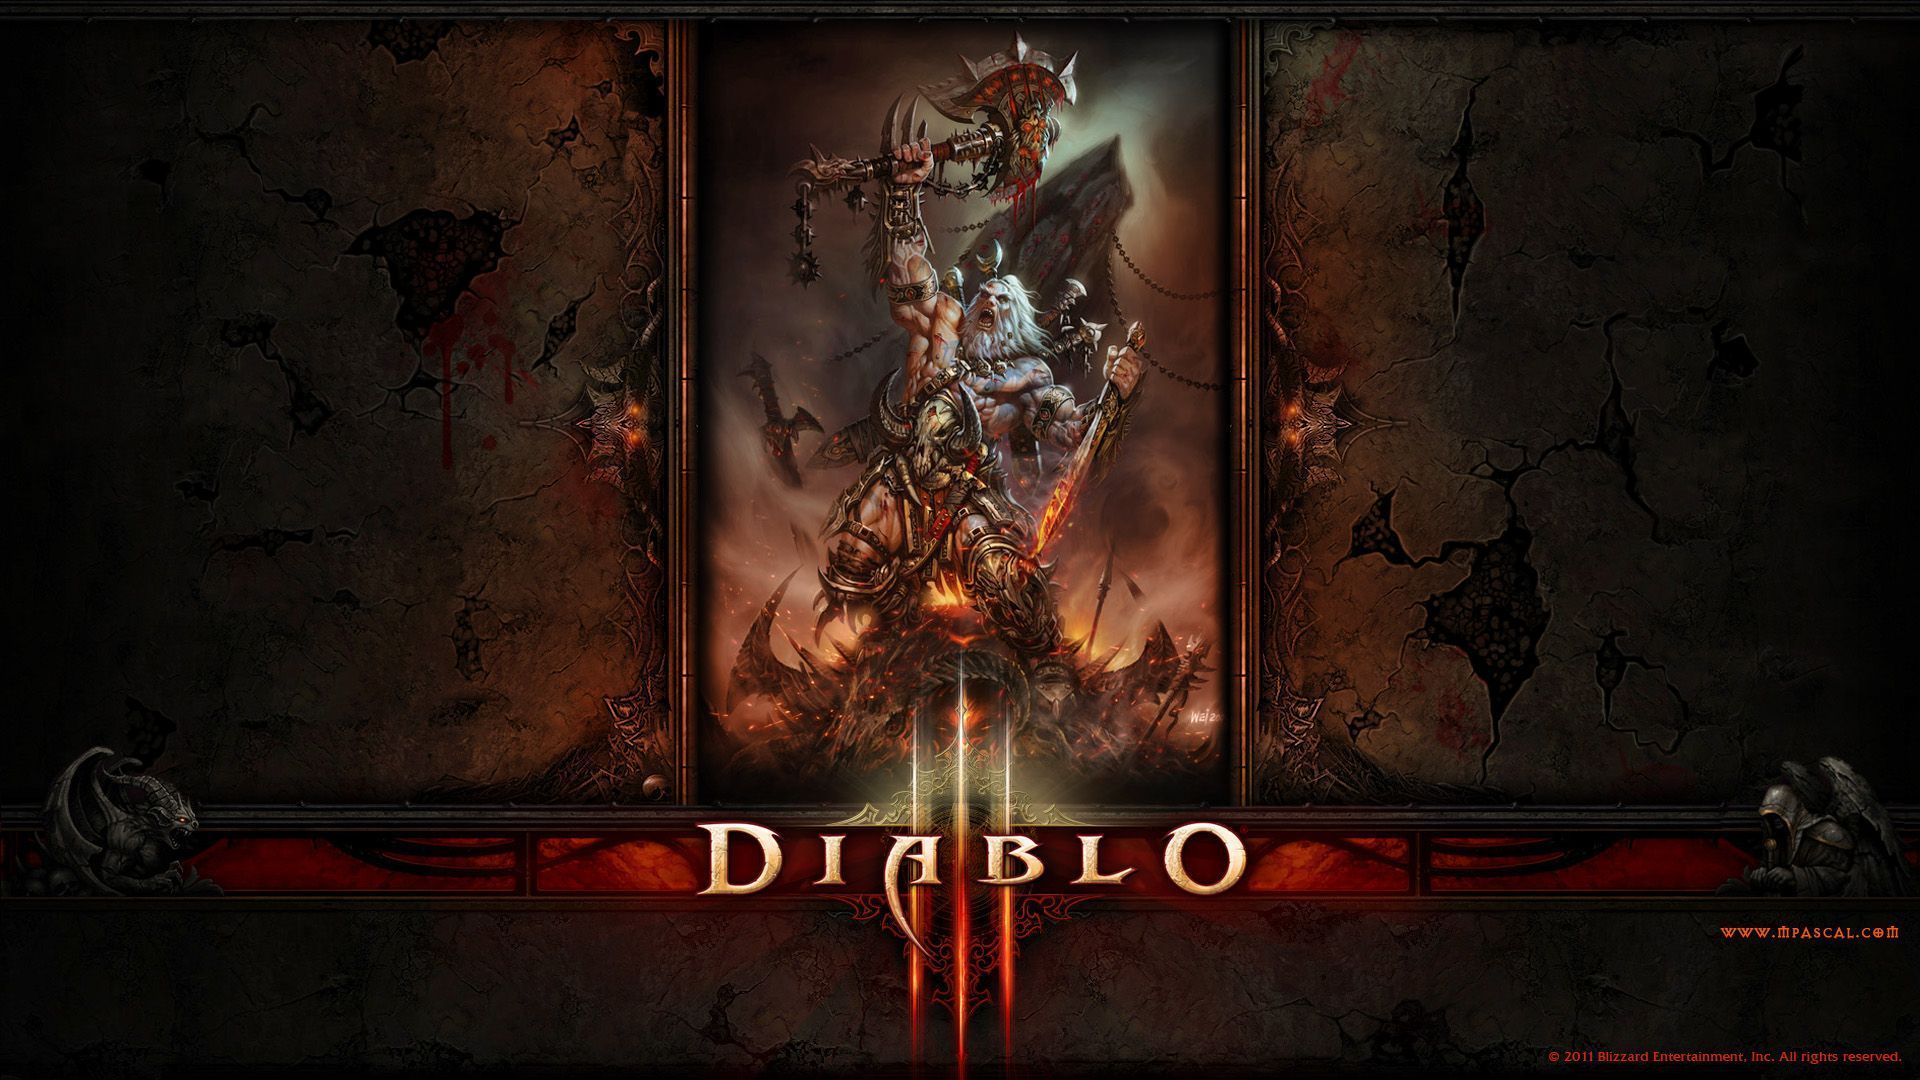 Diablo 3 Barbarian wallpaper by Panperkin on DeviantArt